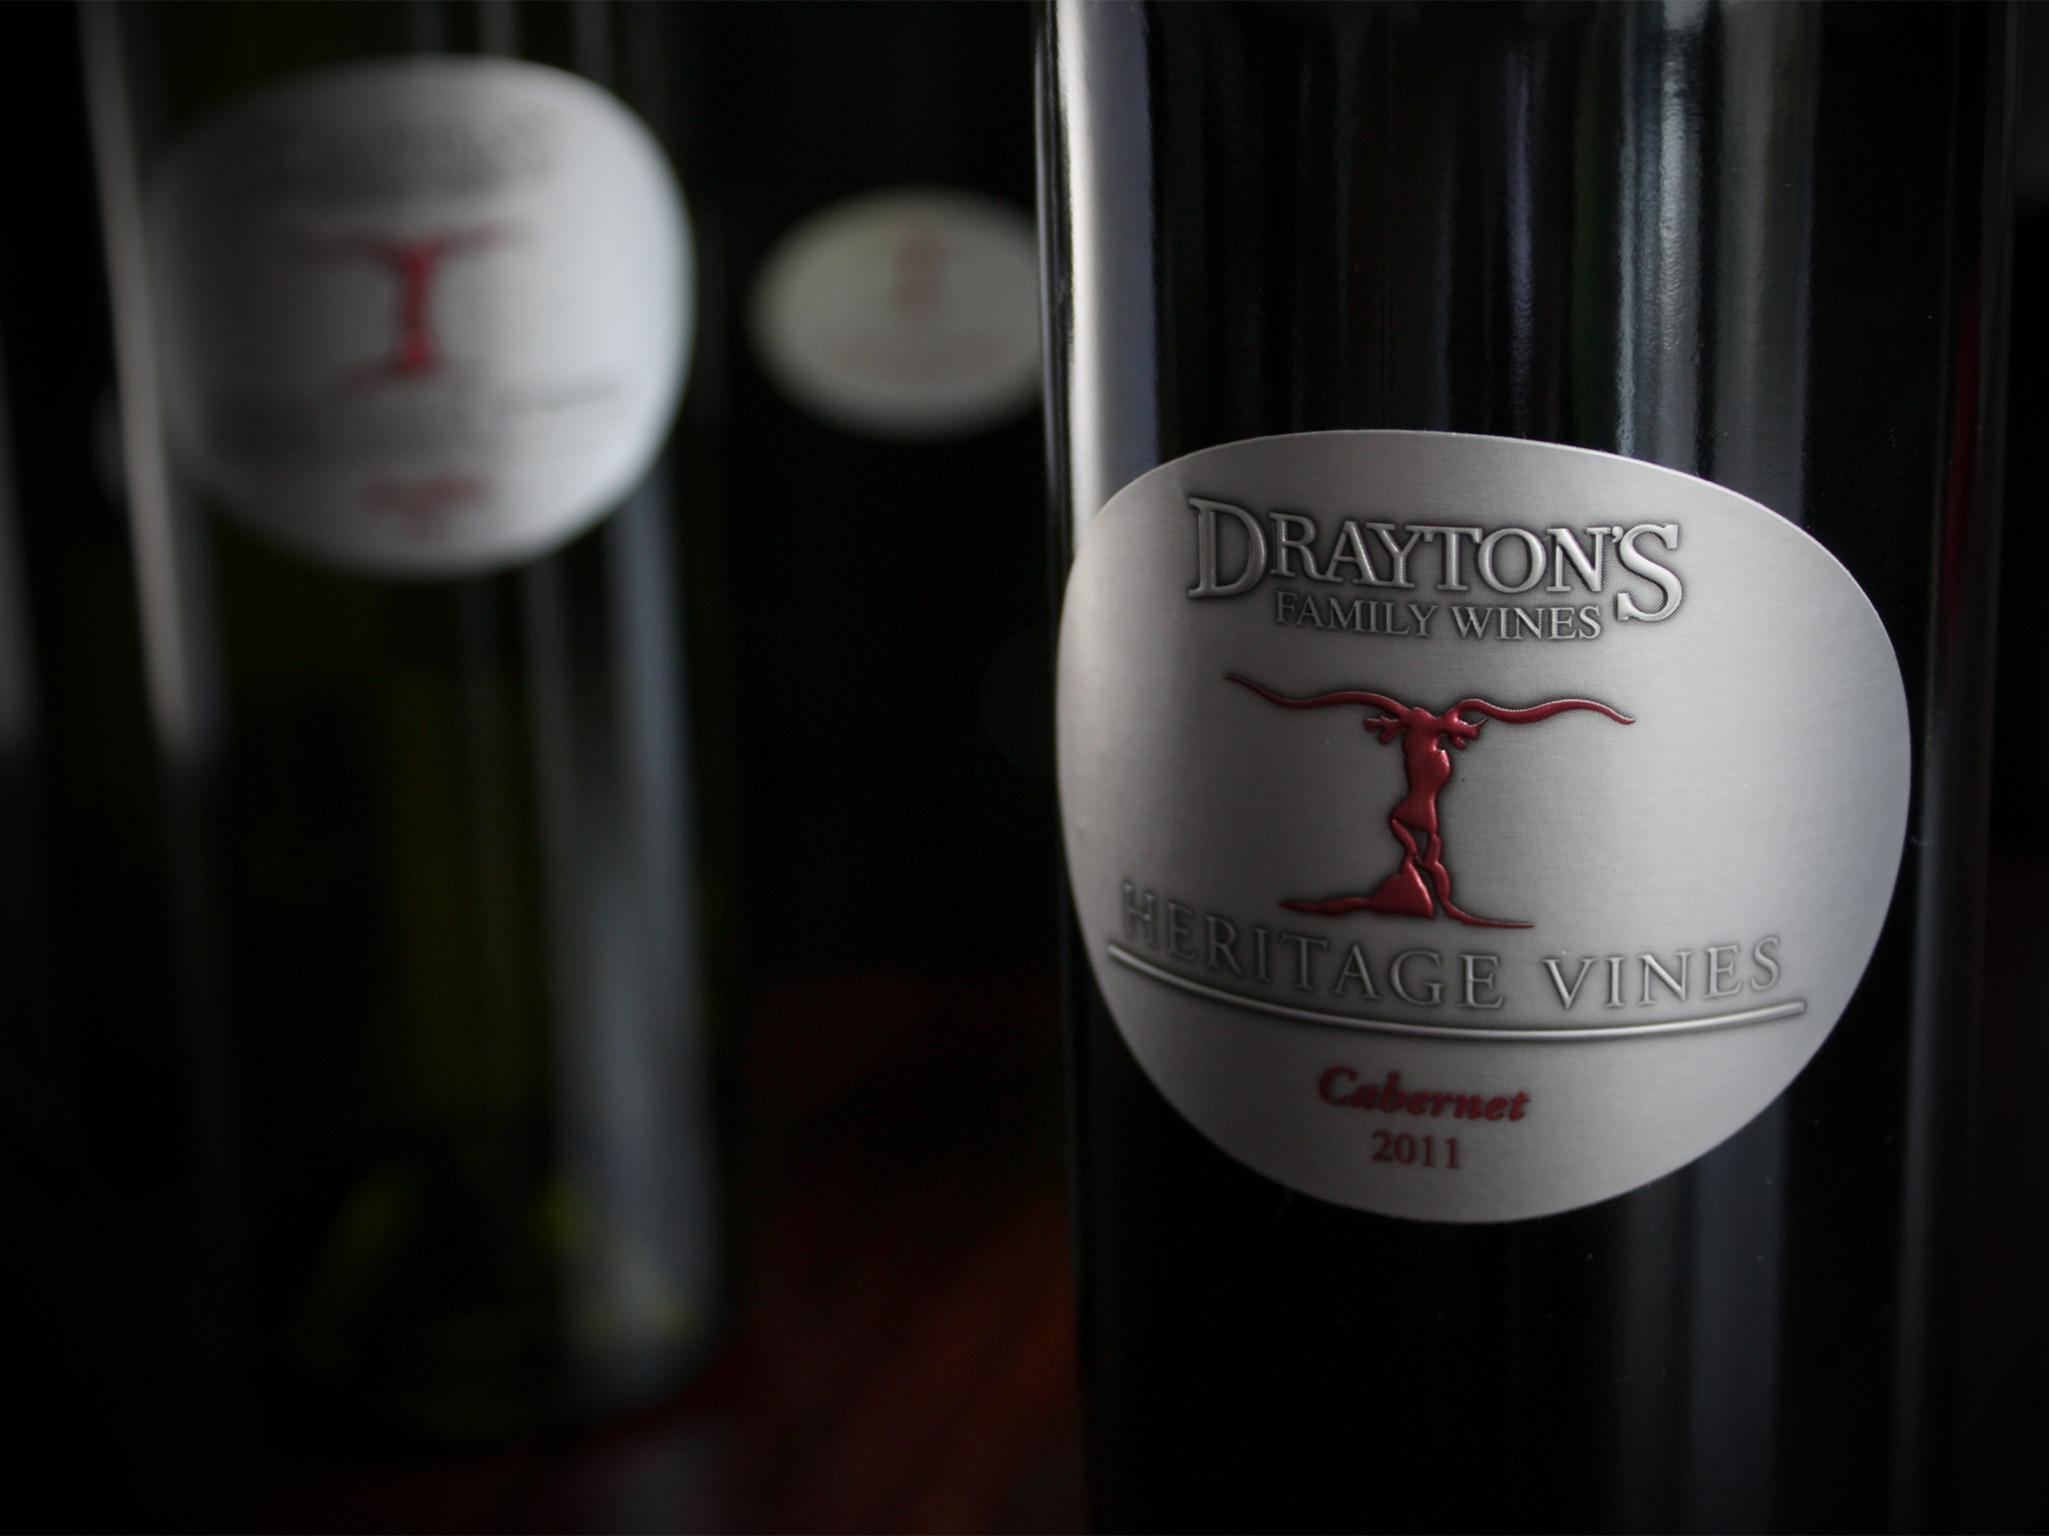 Drayton's Family Wines